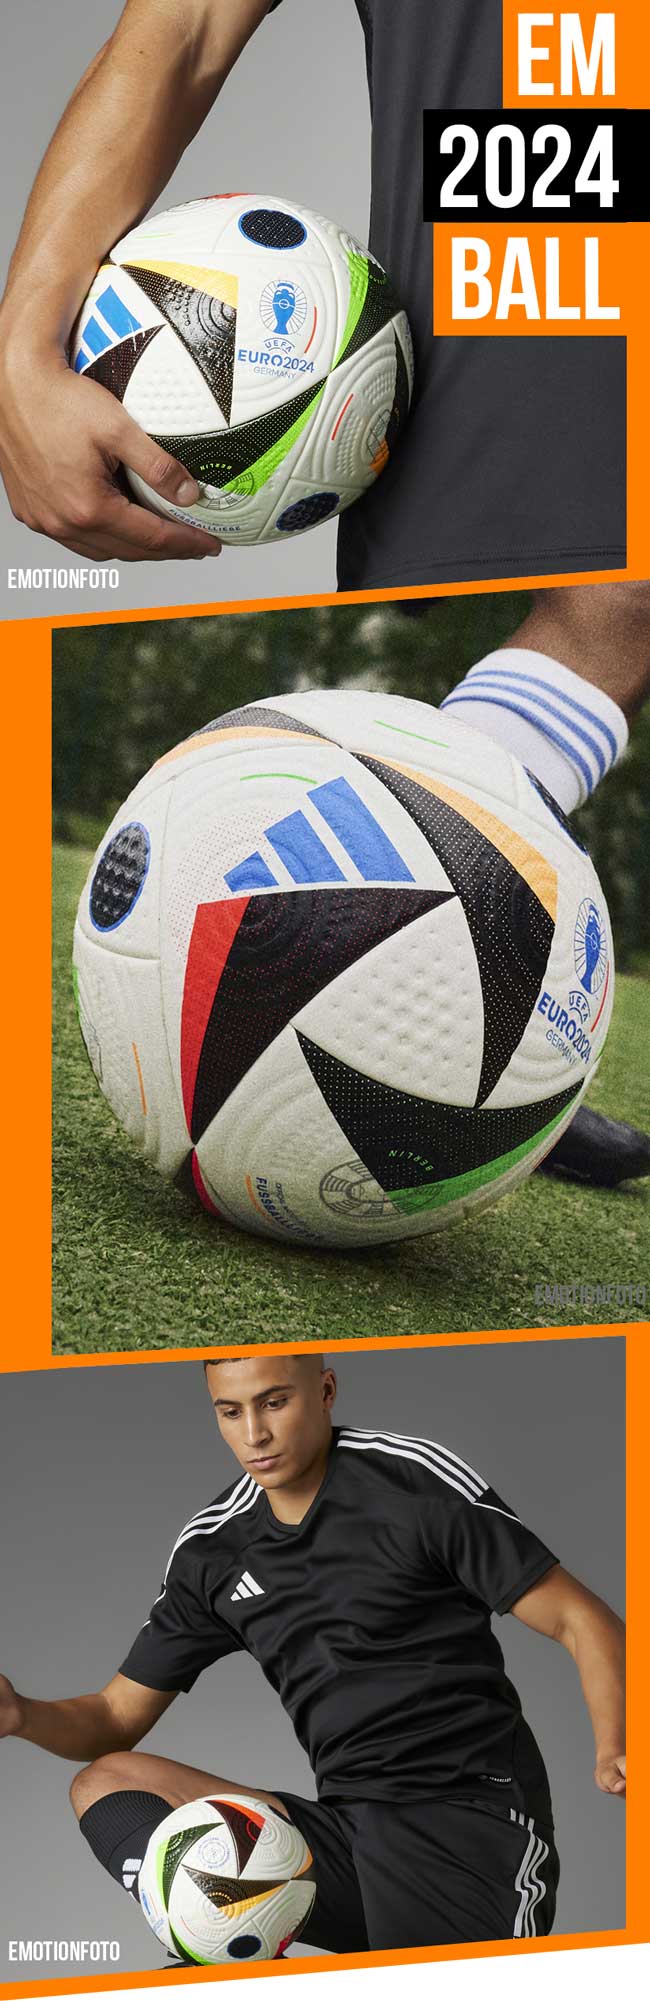 Hier wartet dein adidas Fußballliebe Ball der EM 2024 auf dich!